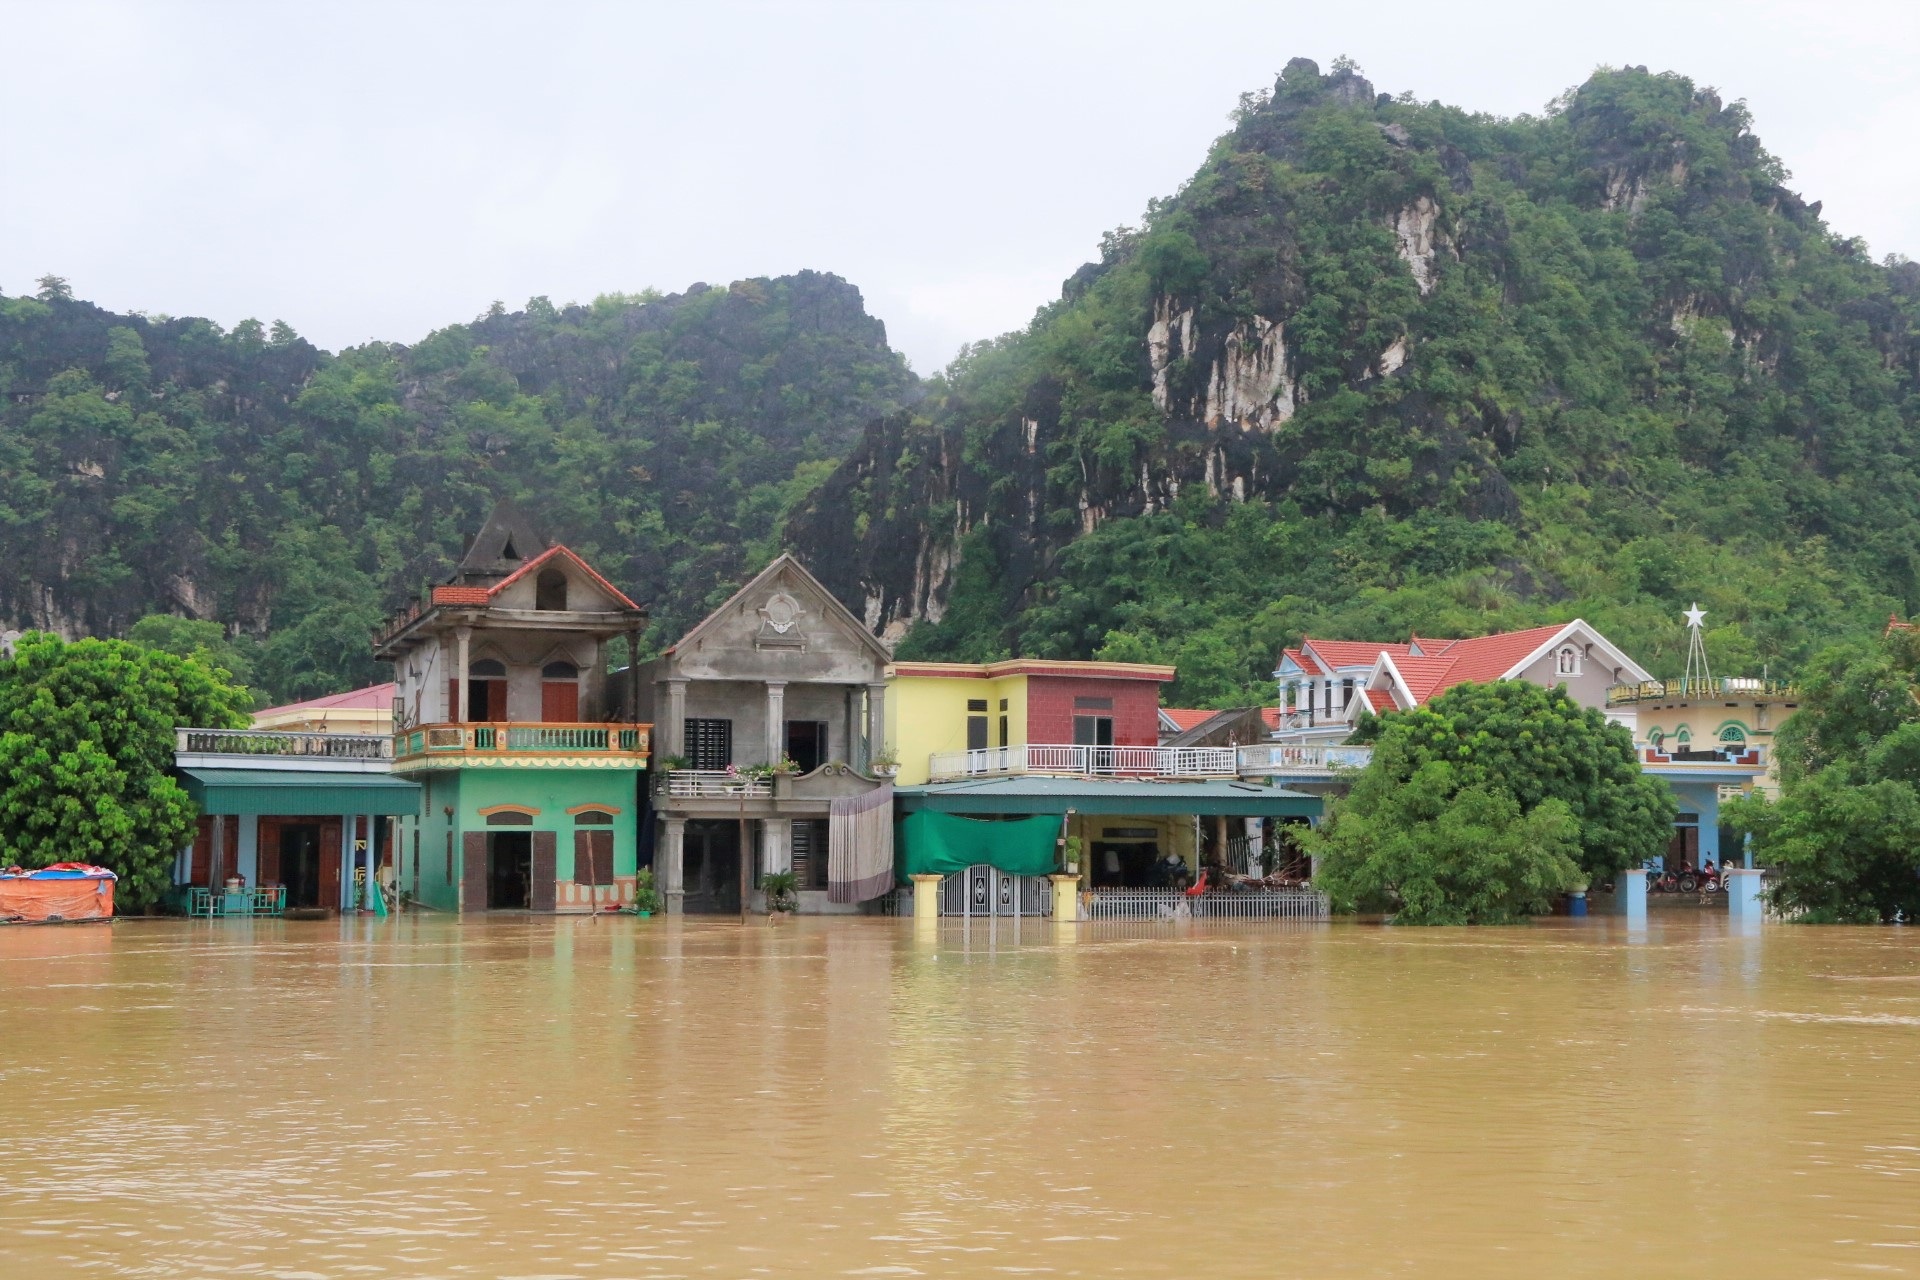 Cận cảnh nước lũ cô lập hàng trăm hộ dân ở Ninh Bình - 2